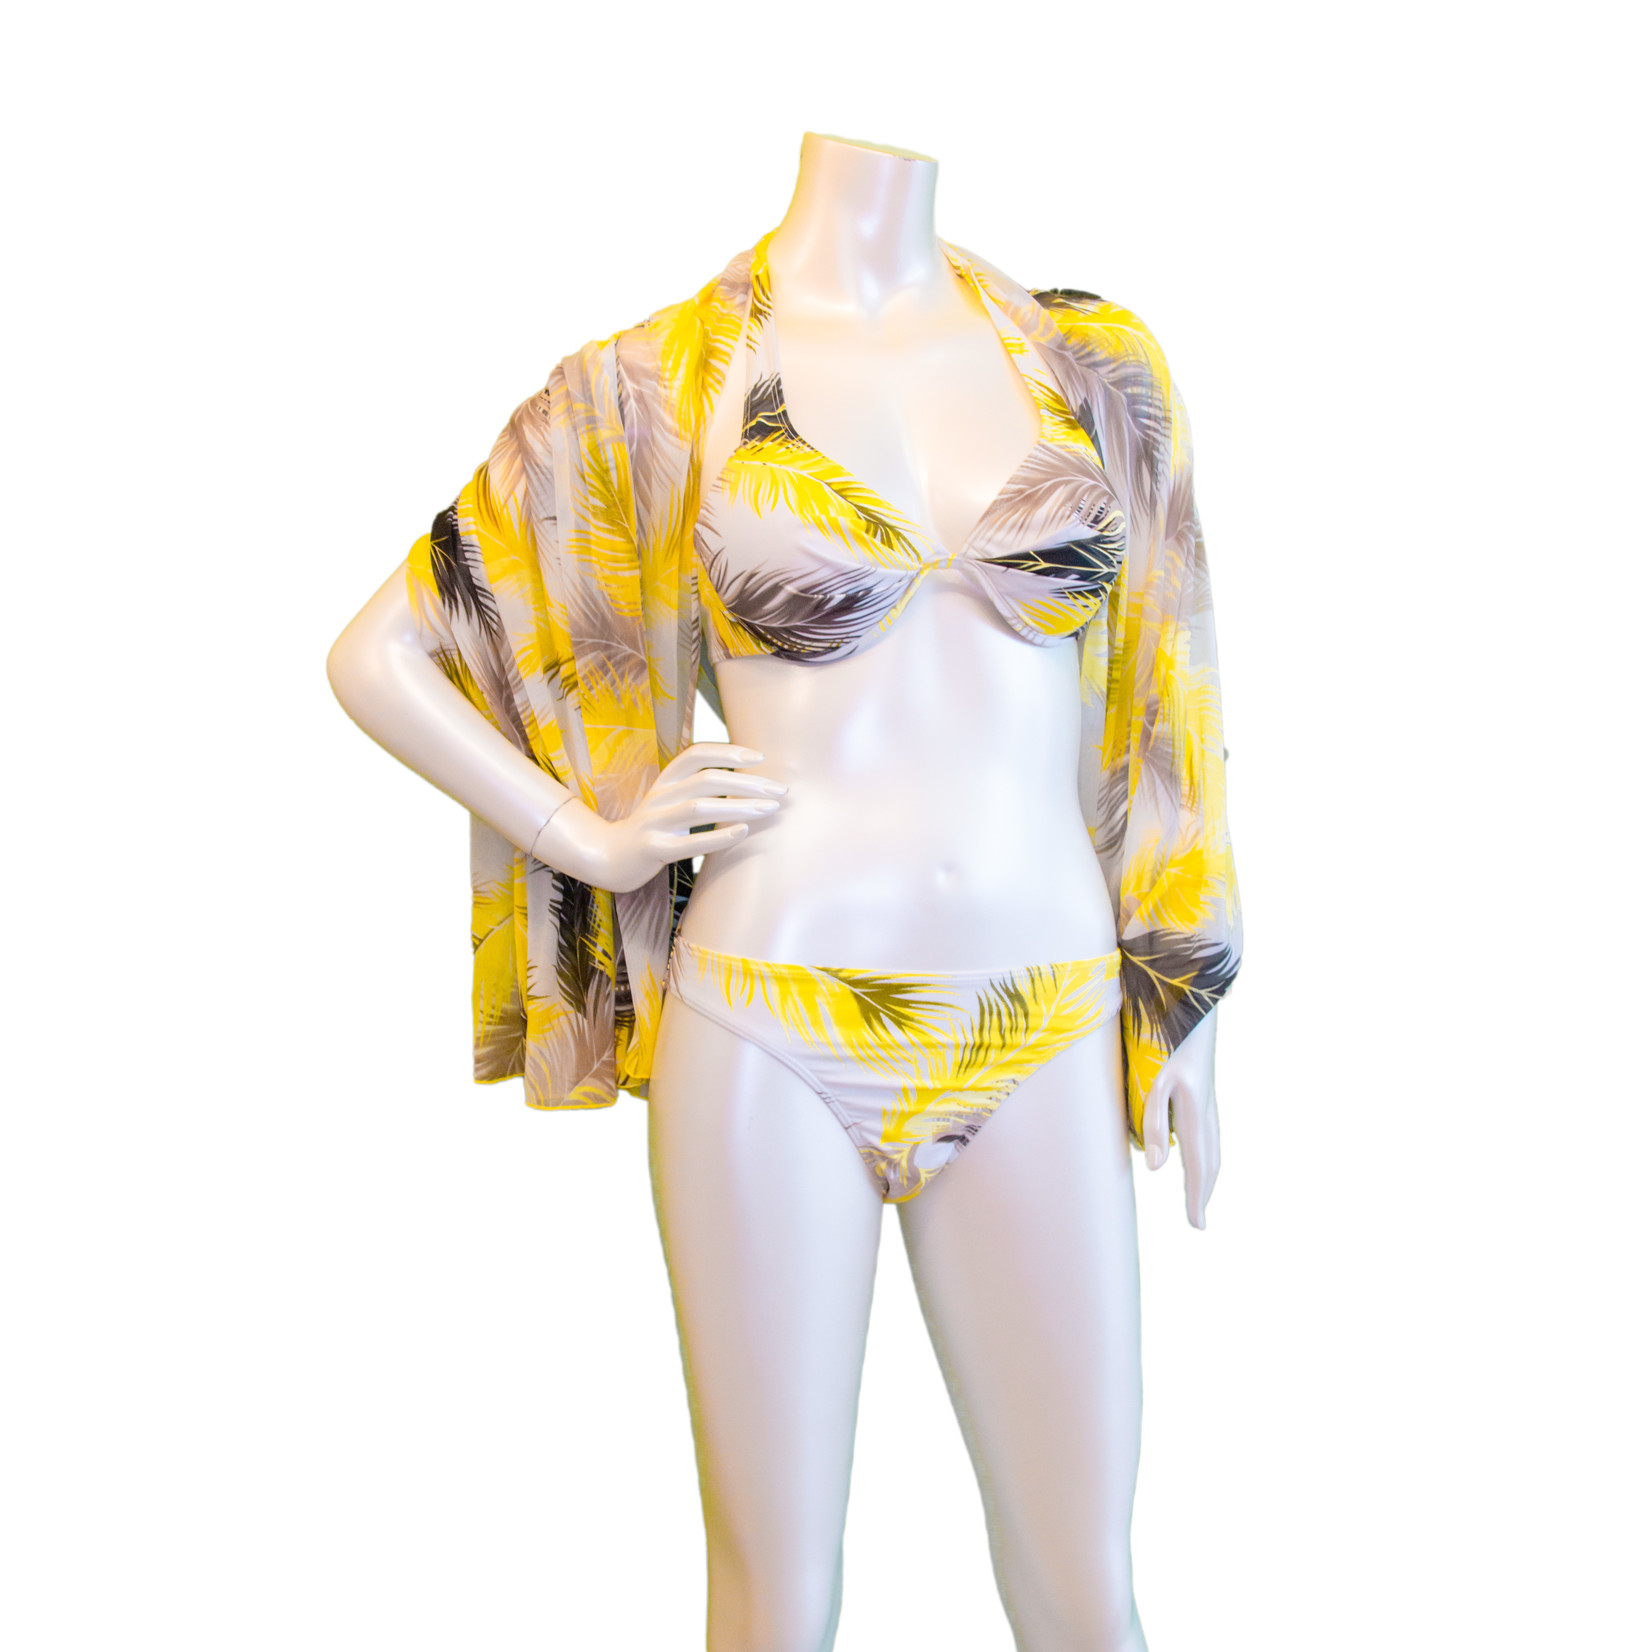 https://cdn.shoplightspeed.com/shops/641949/files/43567675/1652x1652x2/hawian-punch-3-piece-bikini-with-sarong-swimwear.jpg